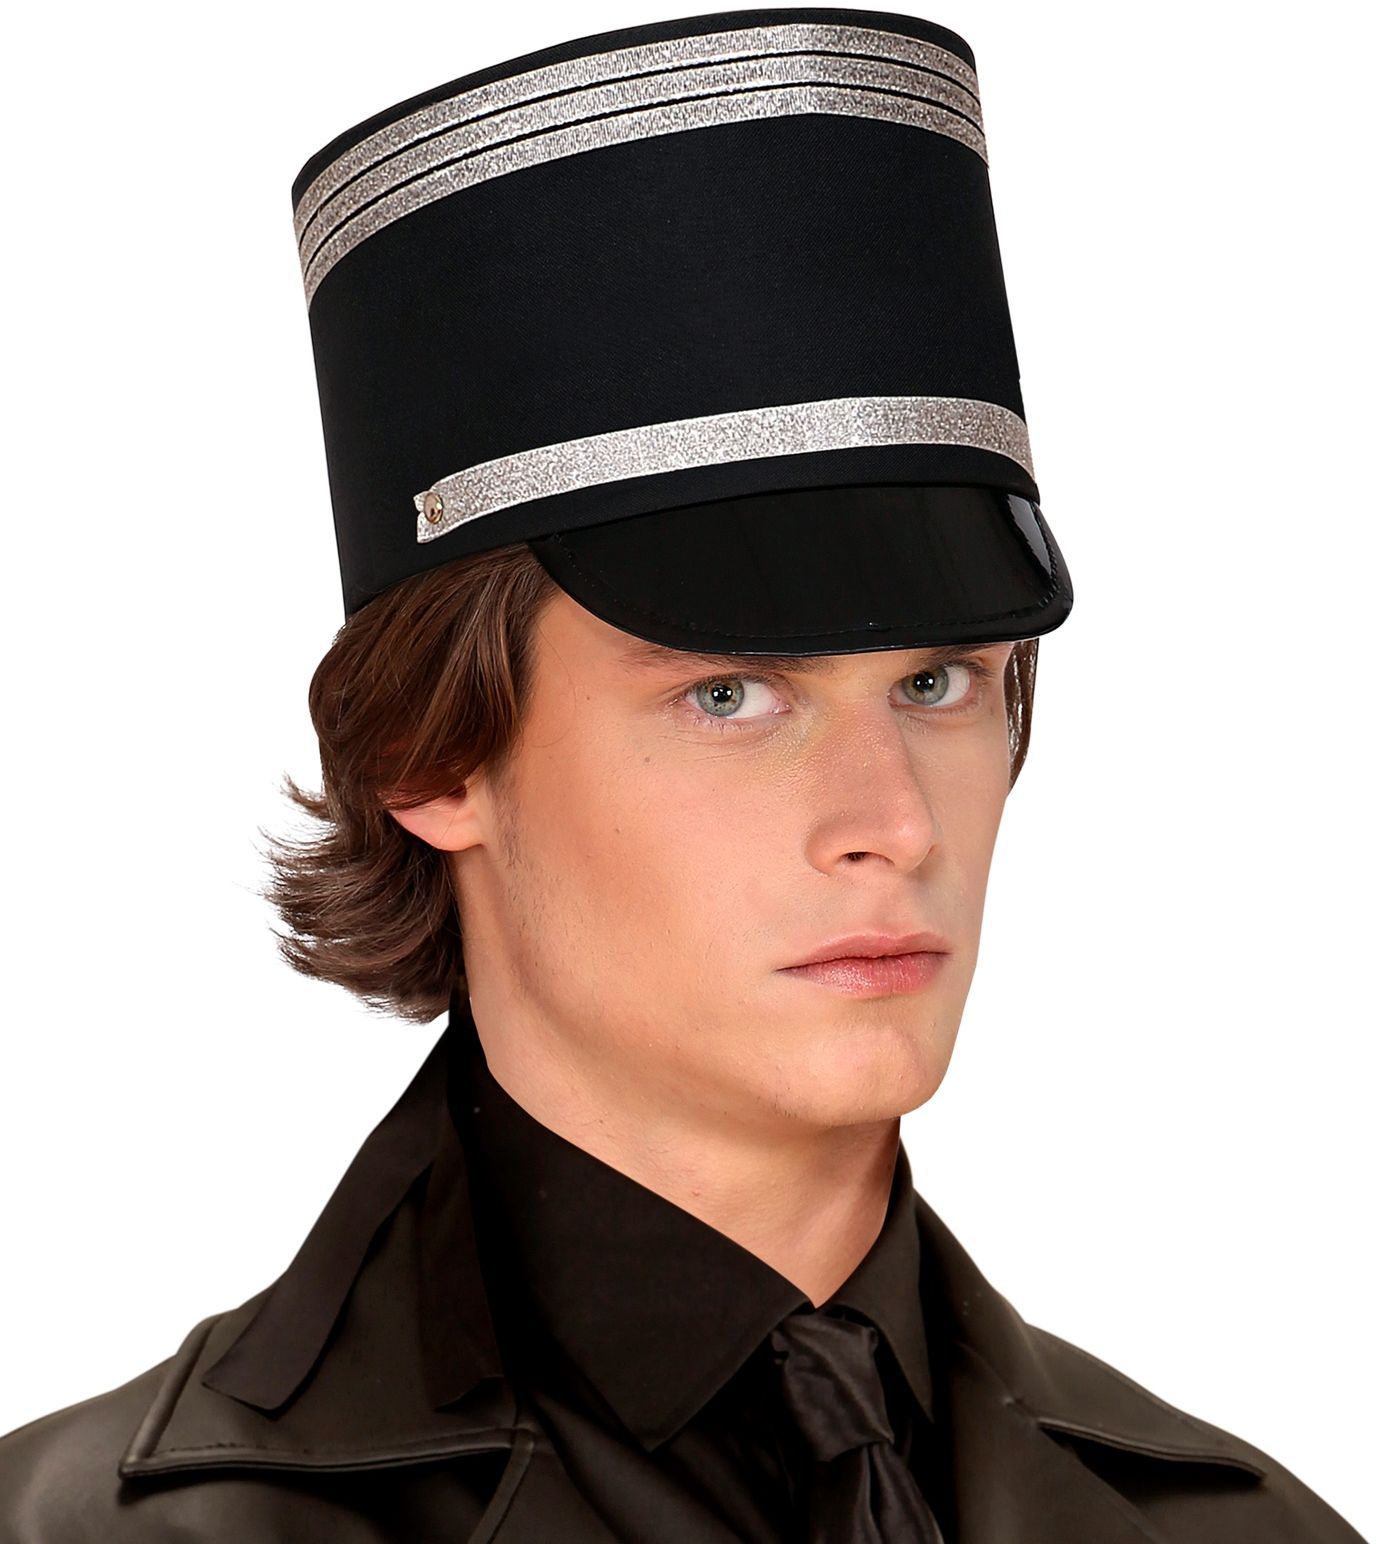 Militaire hoed zwart